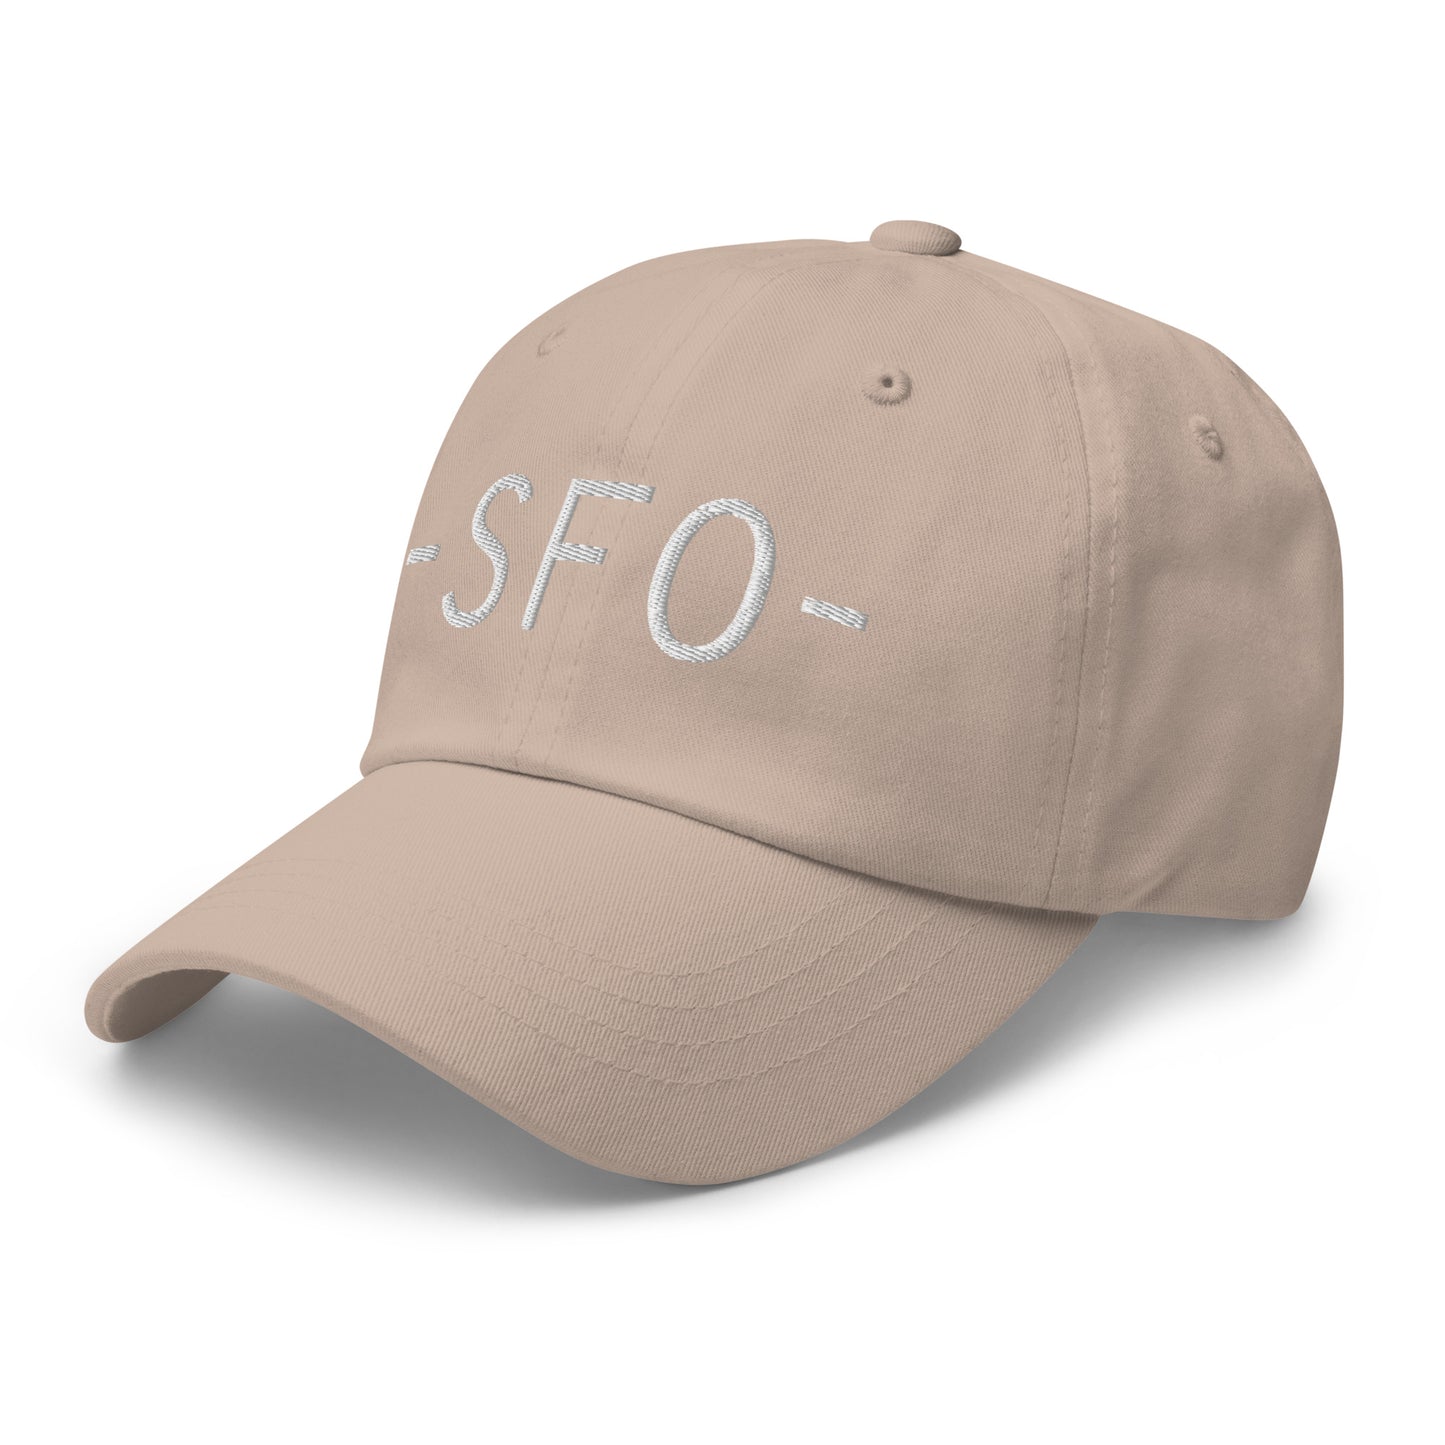 Souvenir Baseball Cap - White • SFO San Francisco • YHM Designs - Image 24